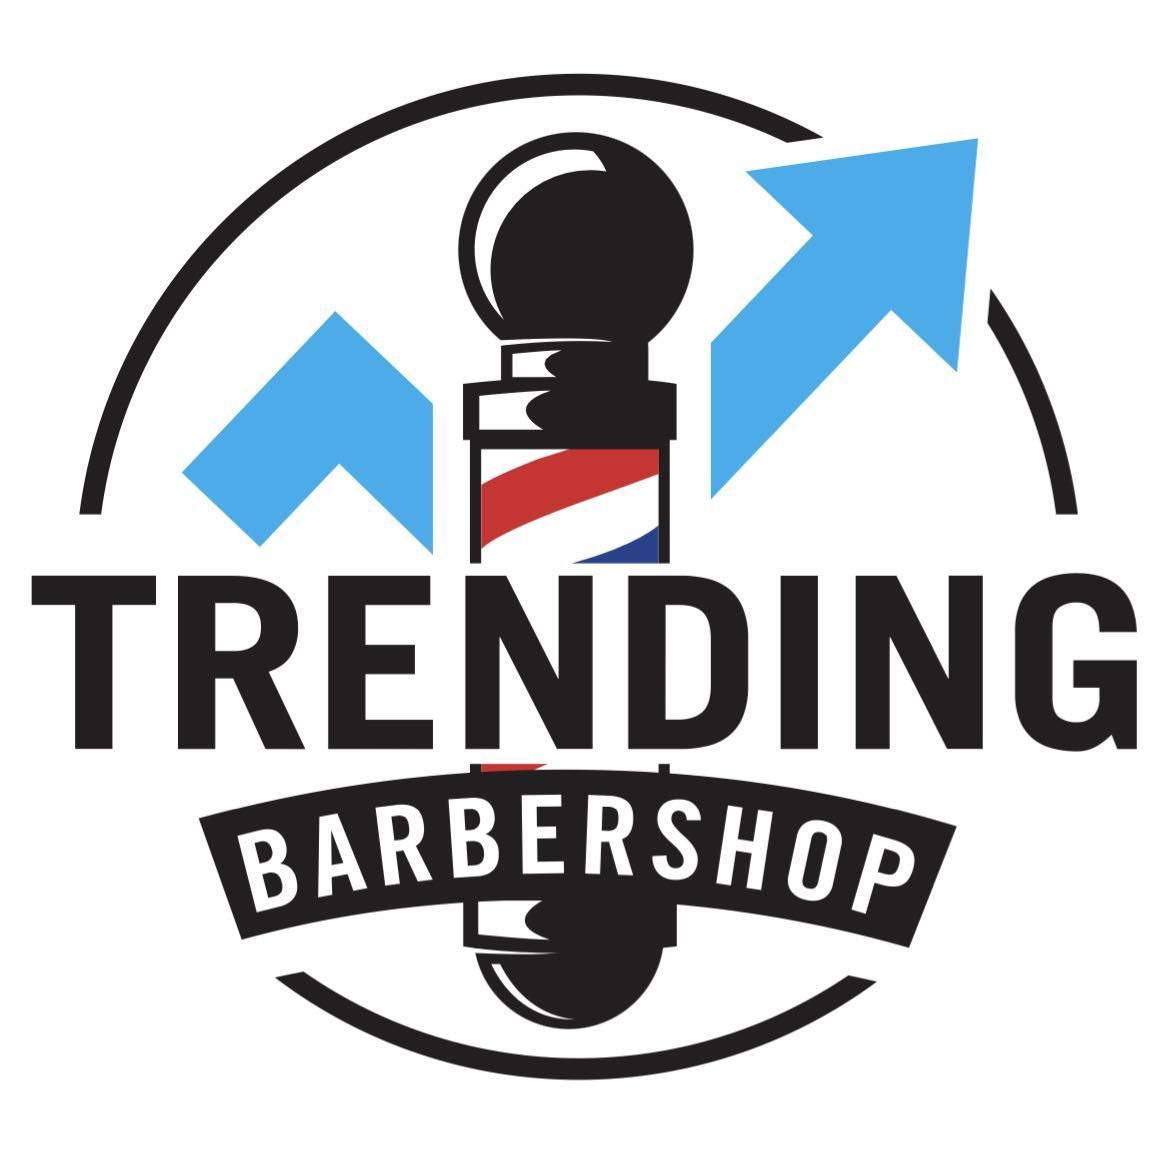 Trending Barbershop, 3024 N Belt Line Rd, Irving, 75062